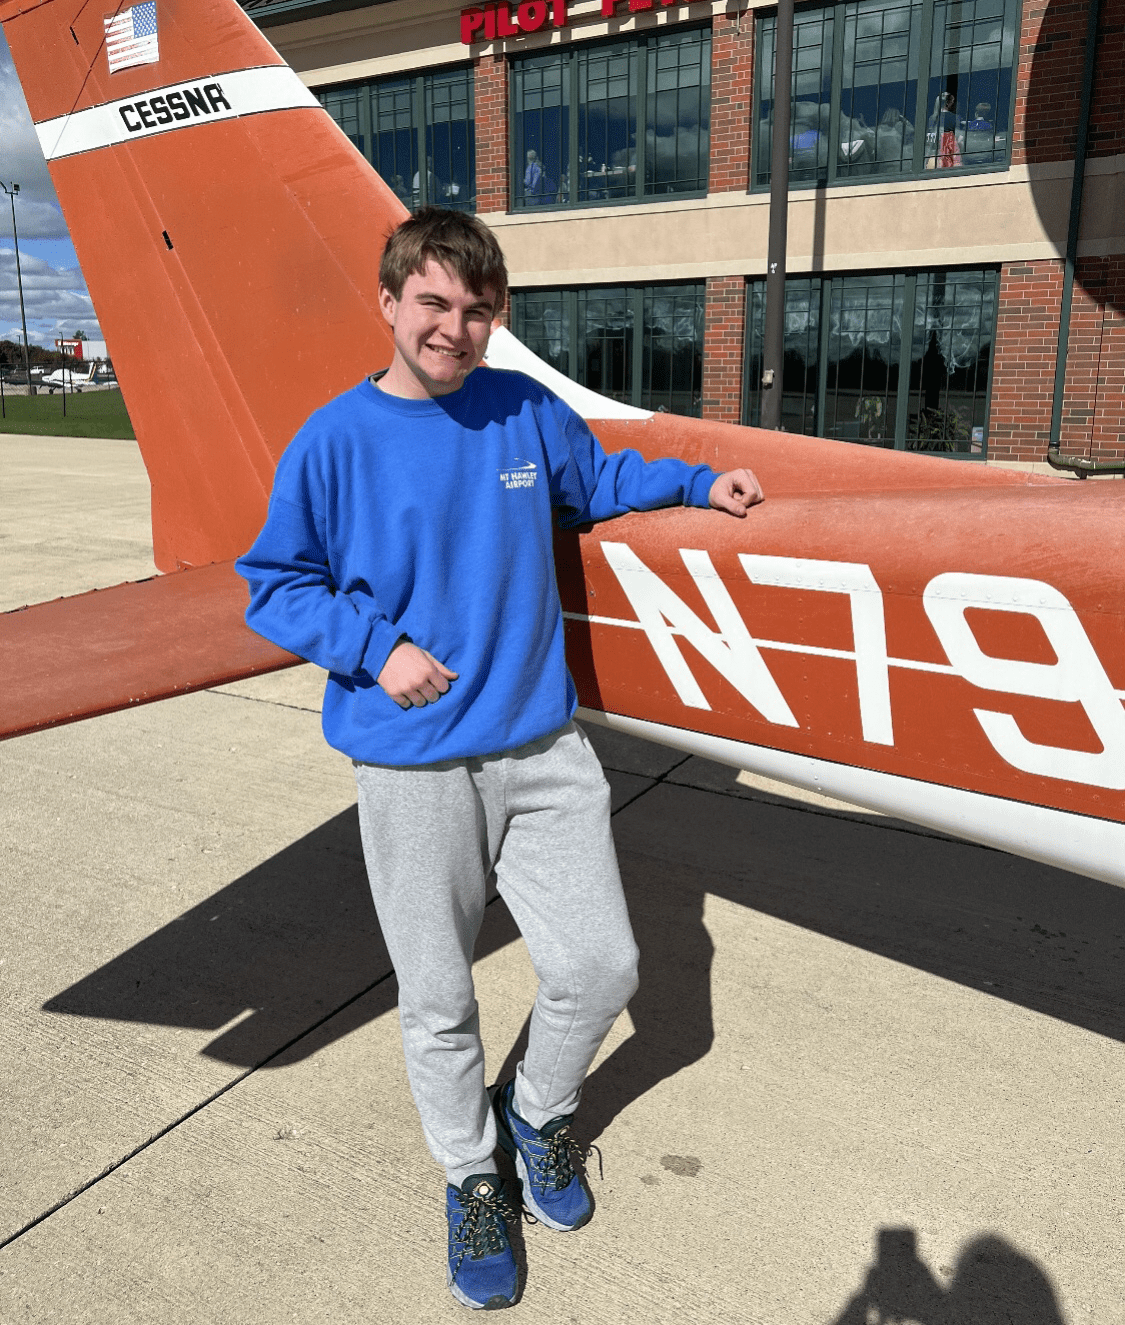 Killian, wearing a blue sweatshirt, poses in front of an orange Cessna.